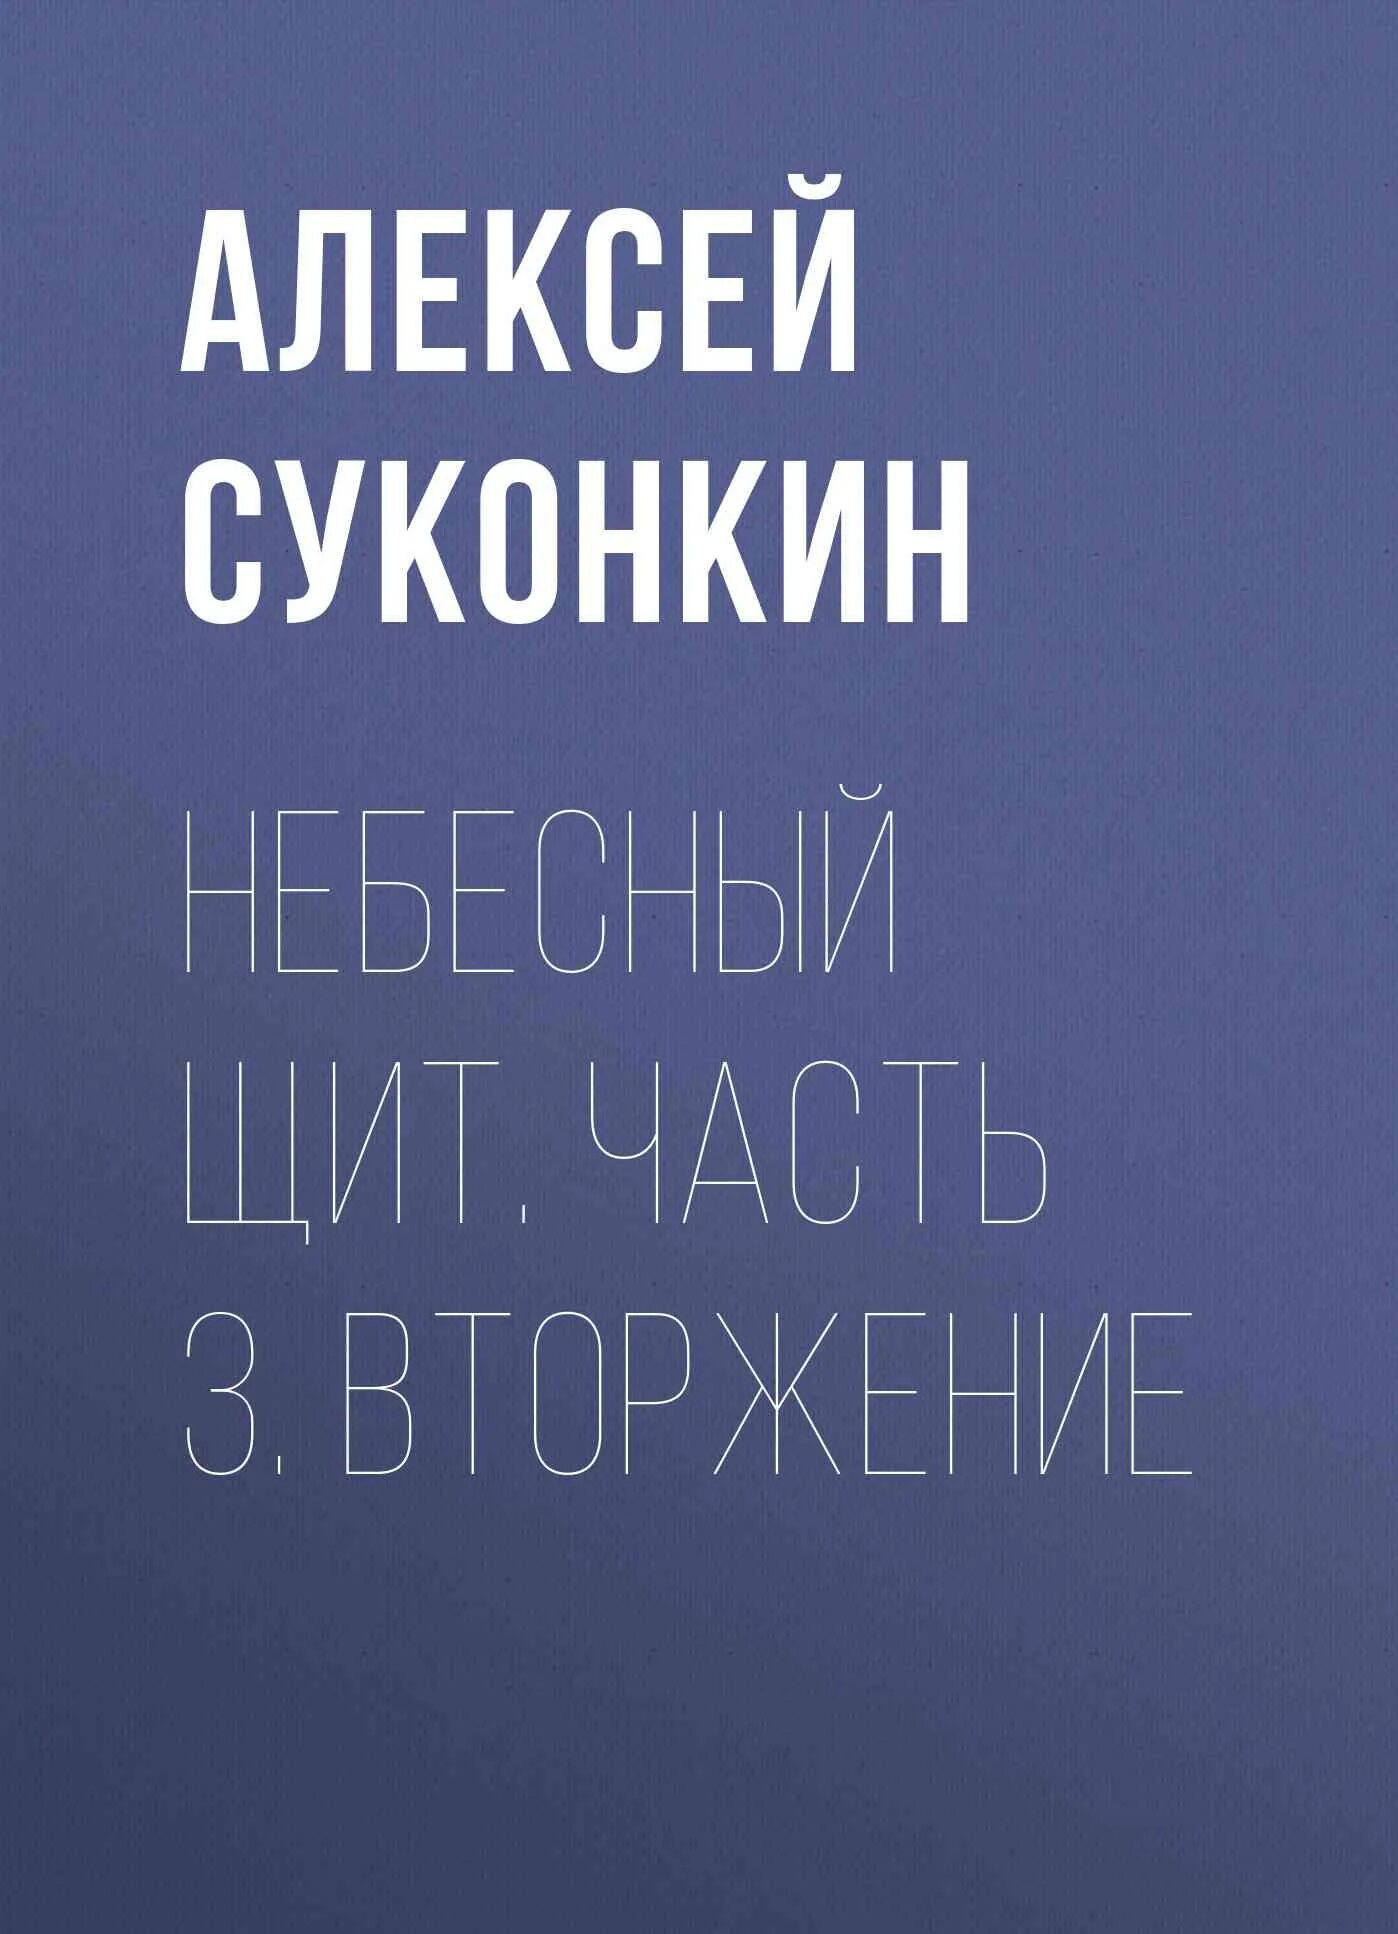 Книги Алексея Суконкина. Суконкин книга купить